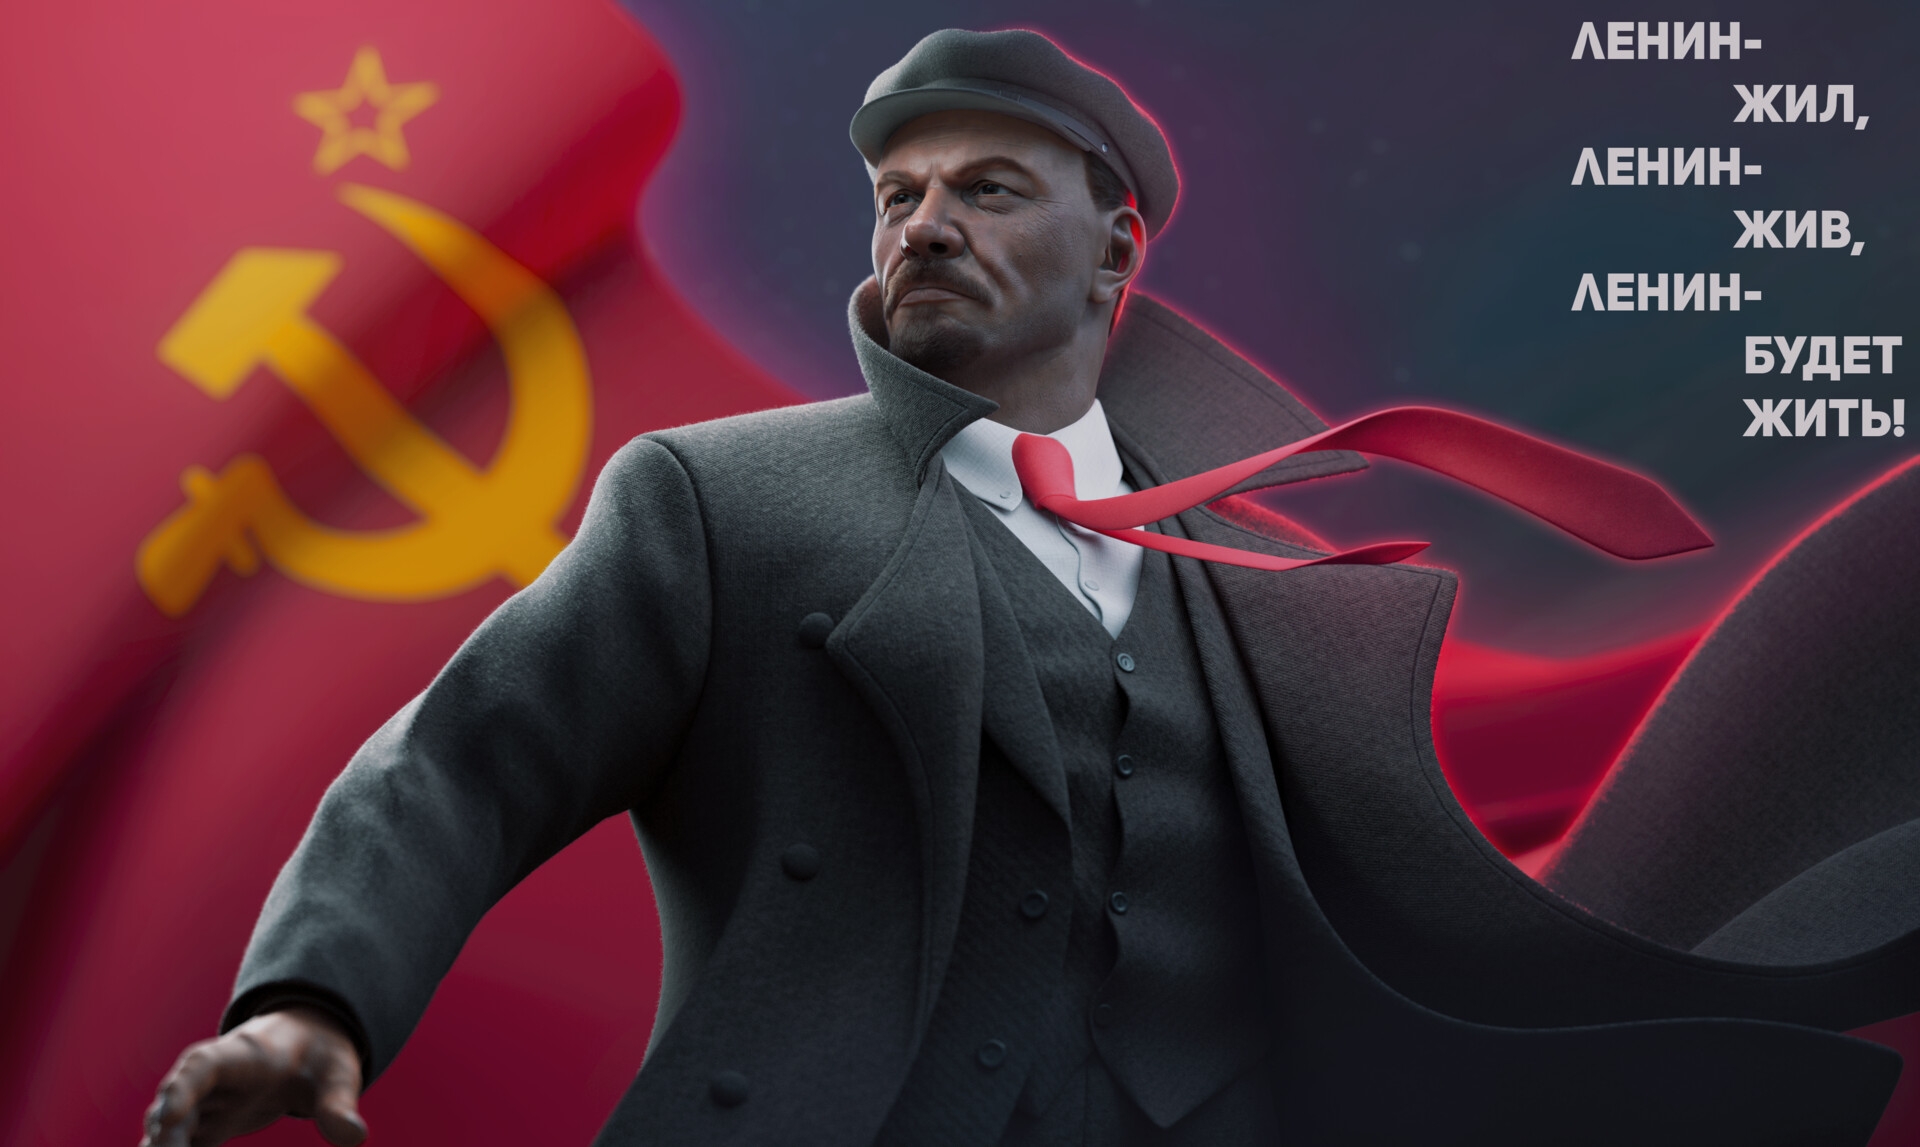 Обои На Телефон Ленин.